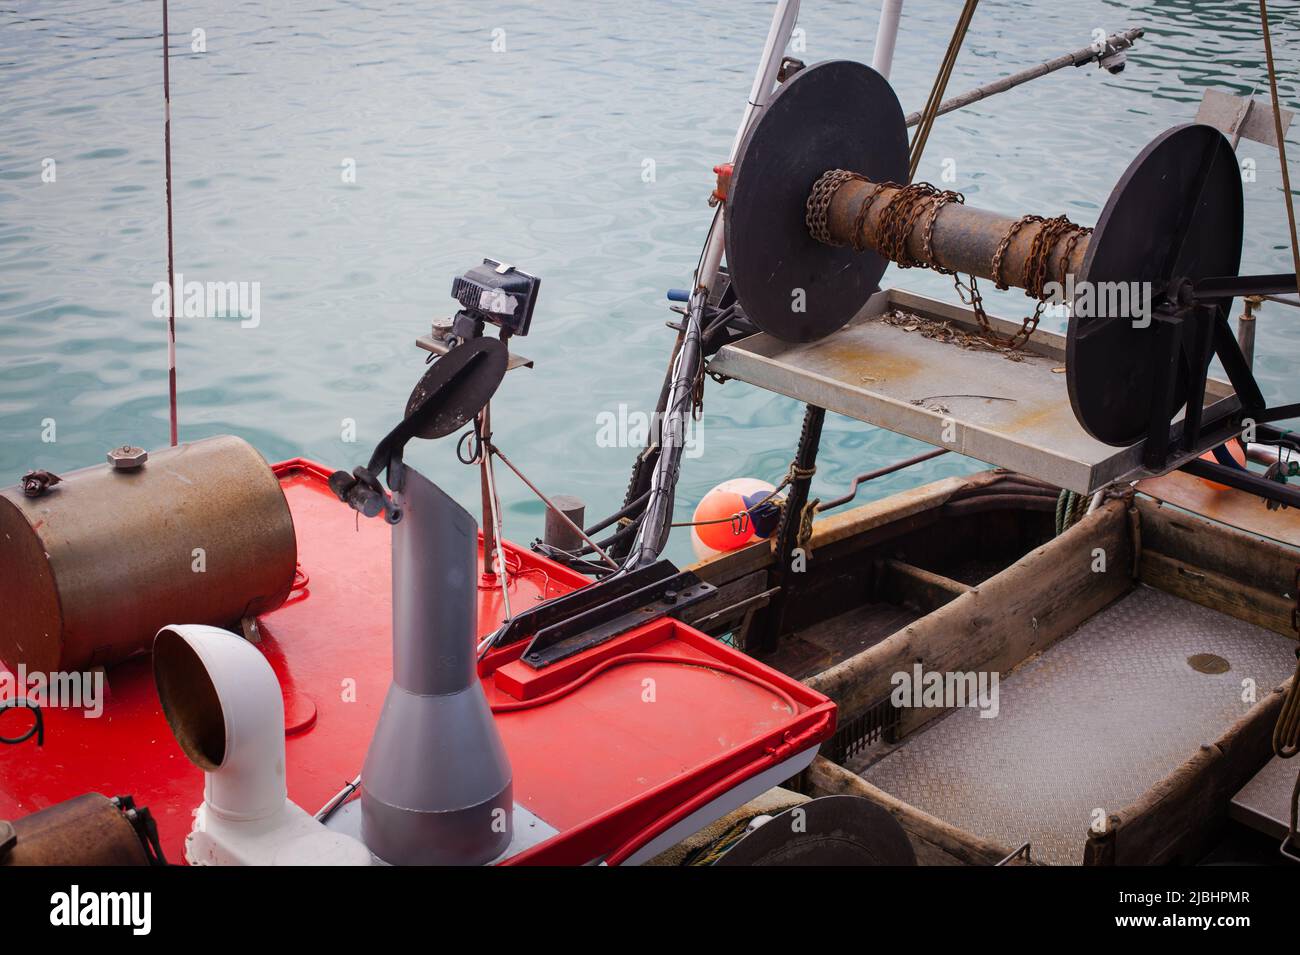 Pescherecci per la pesca costiera: Pescherecci con reti da traino di piccole dimensioni e pescherecci con reti da posta. Timaru Wharf, Isola del Sud Nuova Zelanda. Foto Stock